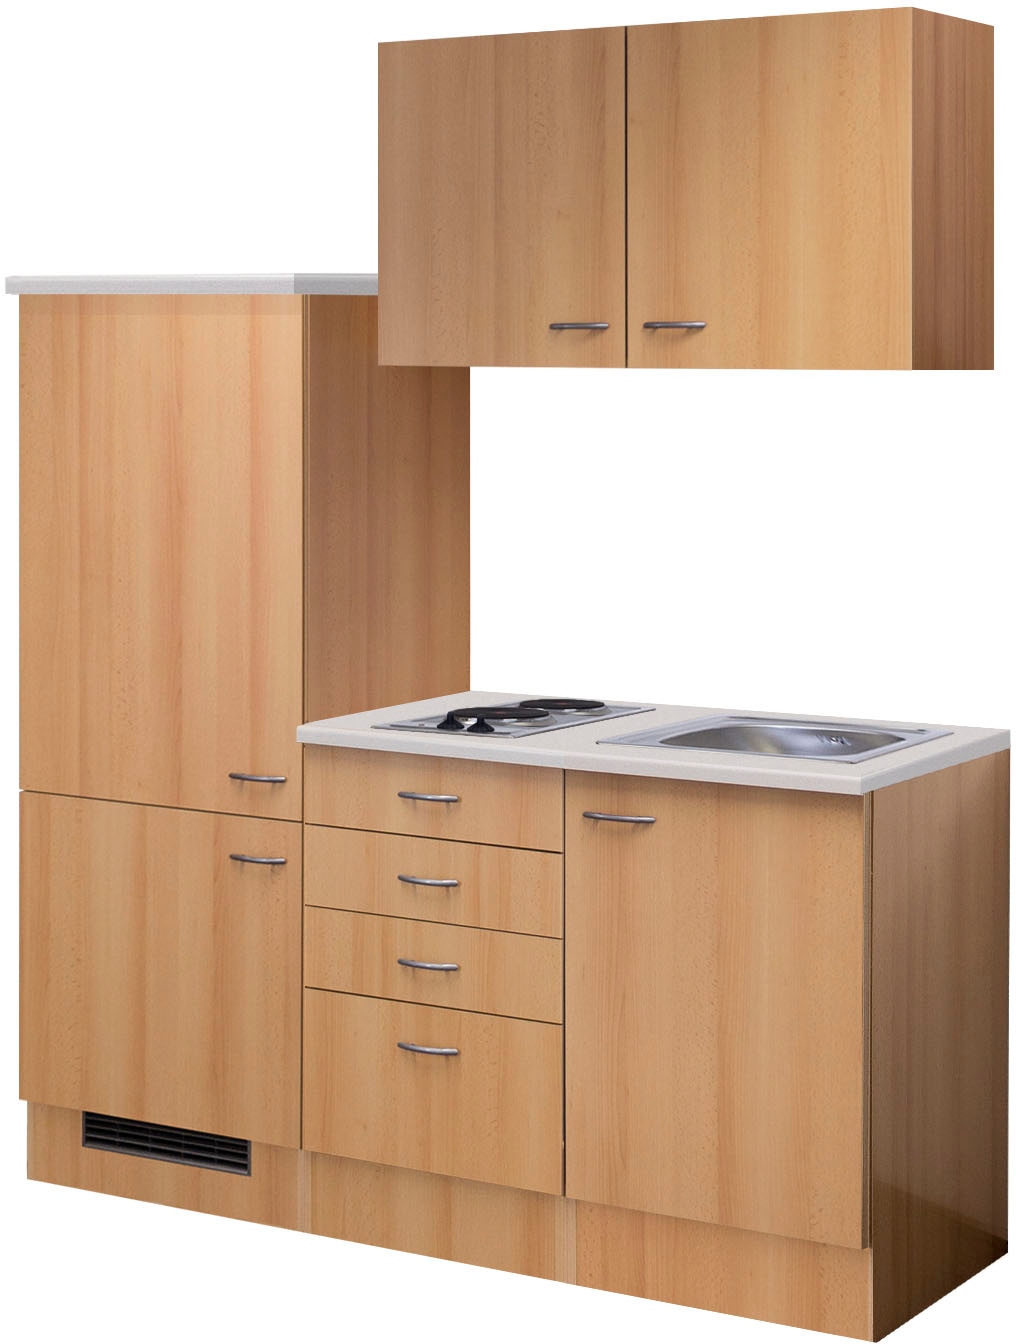 Flex-Well Küche »Nano«, Gesamtbreite 160 cm, mit Einbau-Kühlschrank, Kochfeld und Spüle etc.